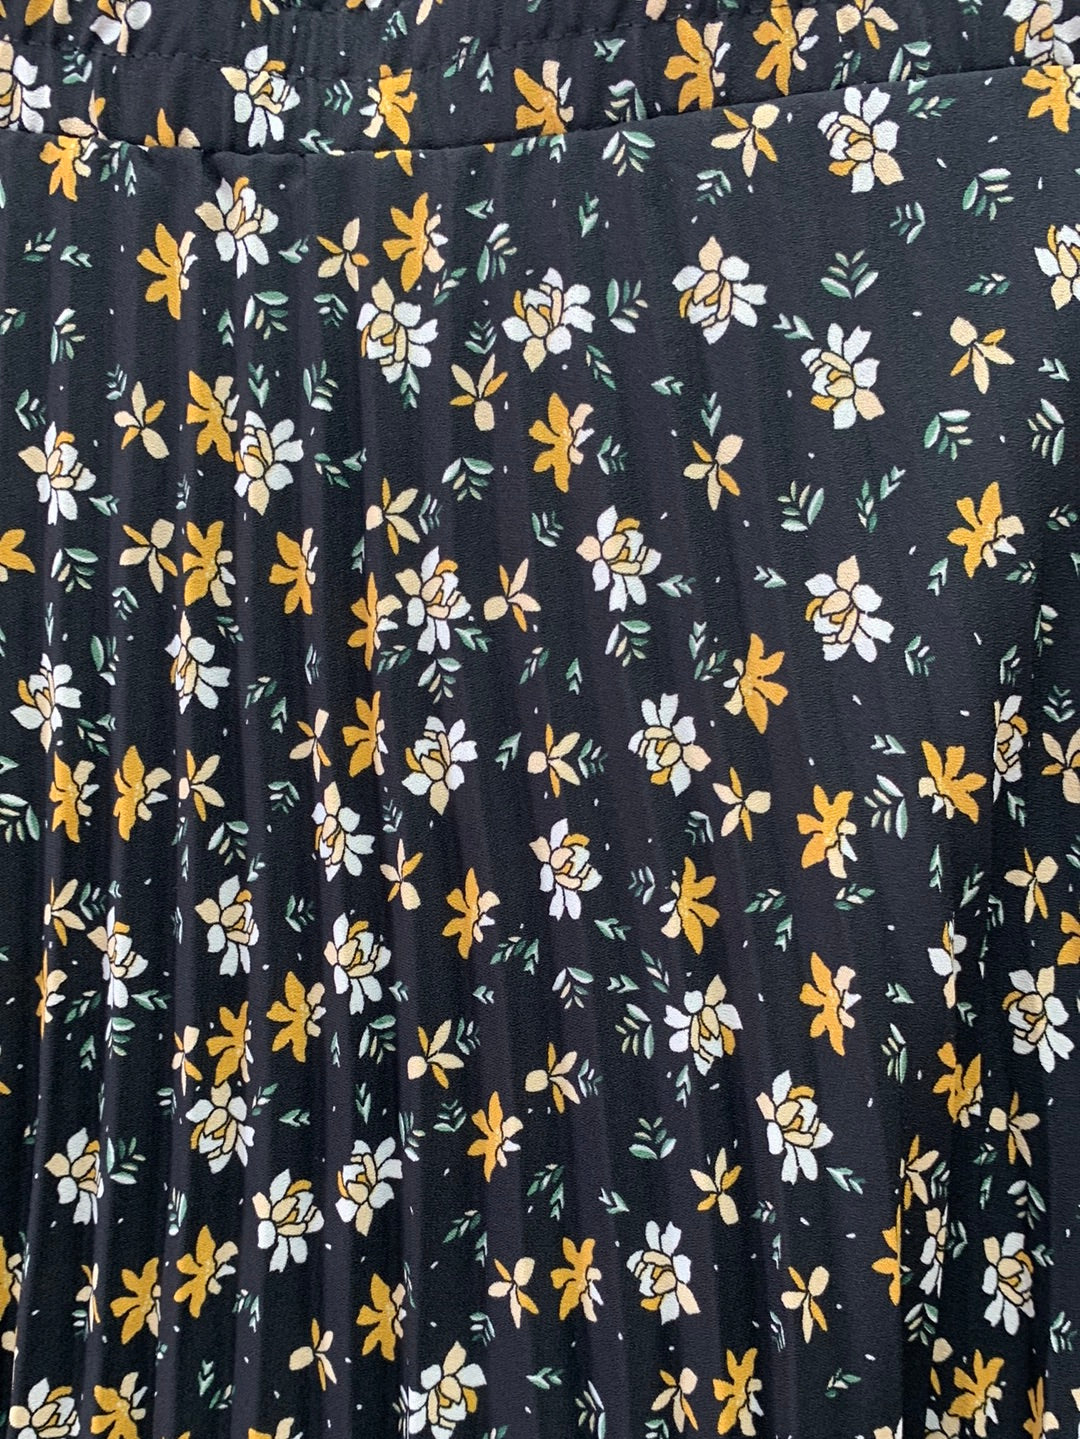 NWT - MAX STUDIO black floral Pleated Lined Midi Skirt - Medium